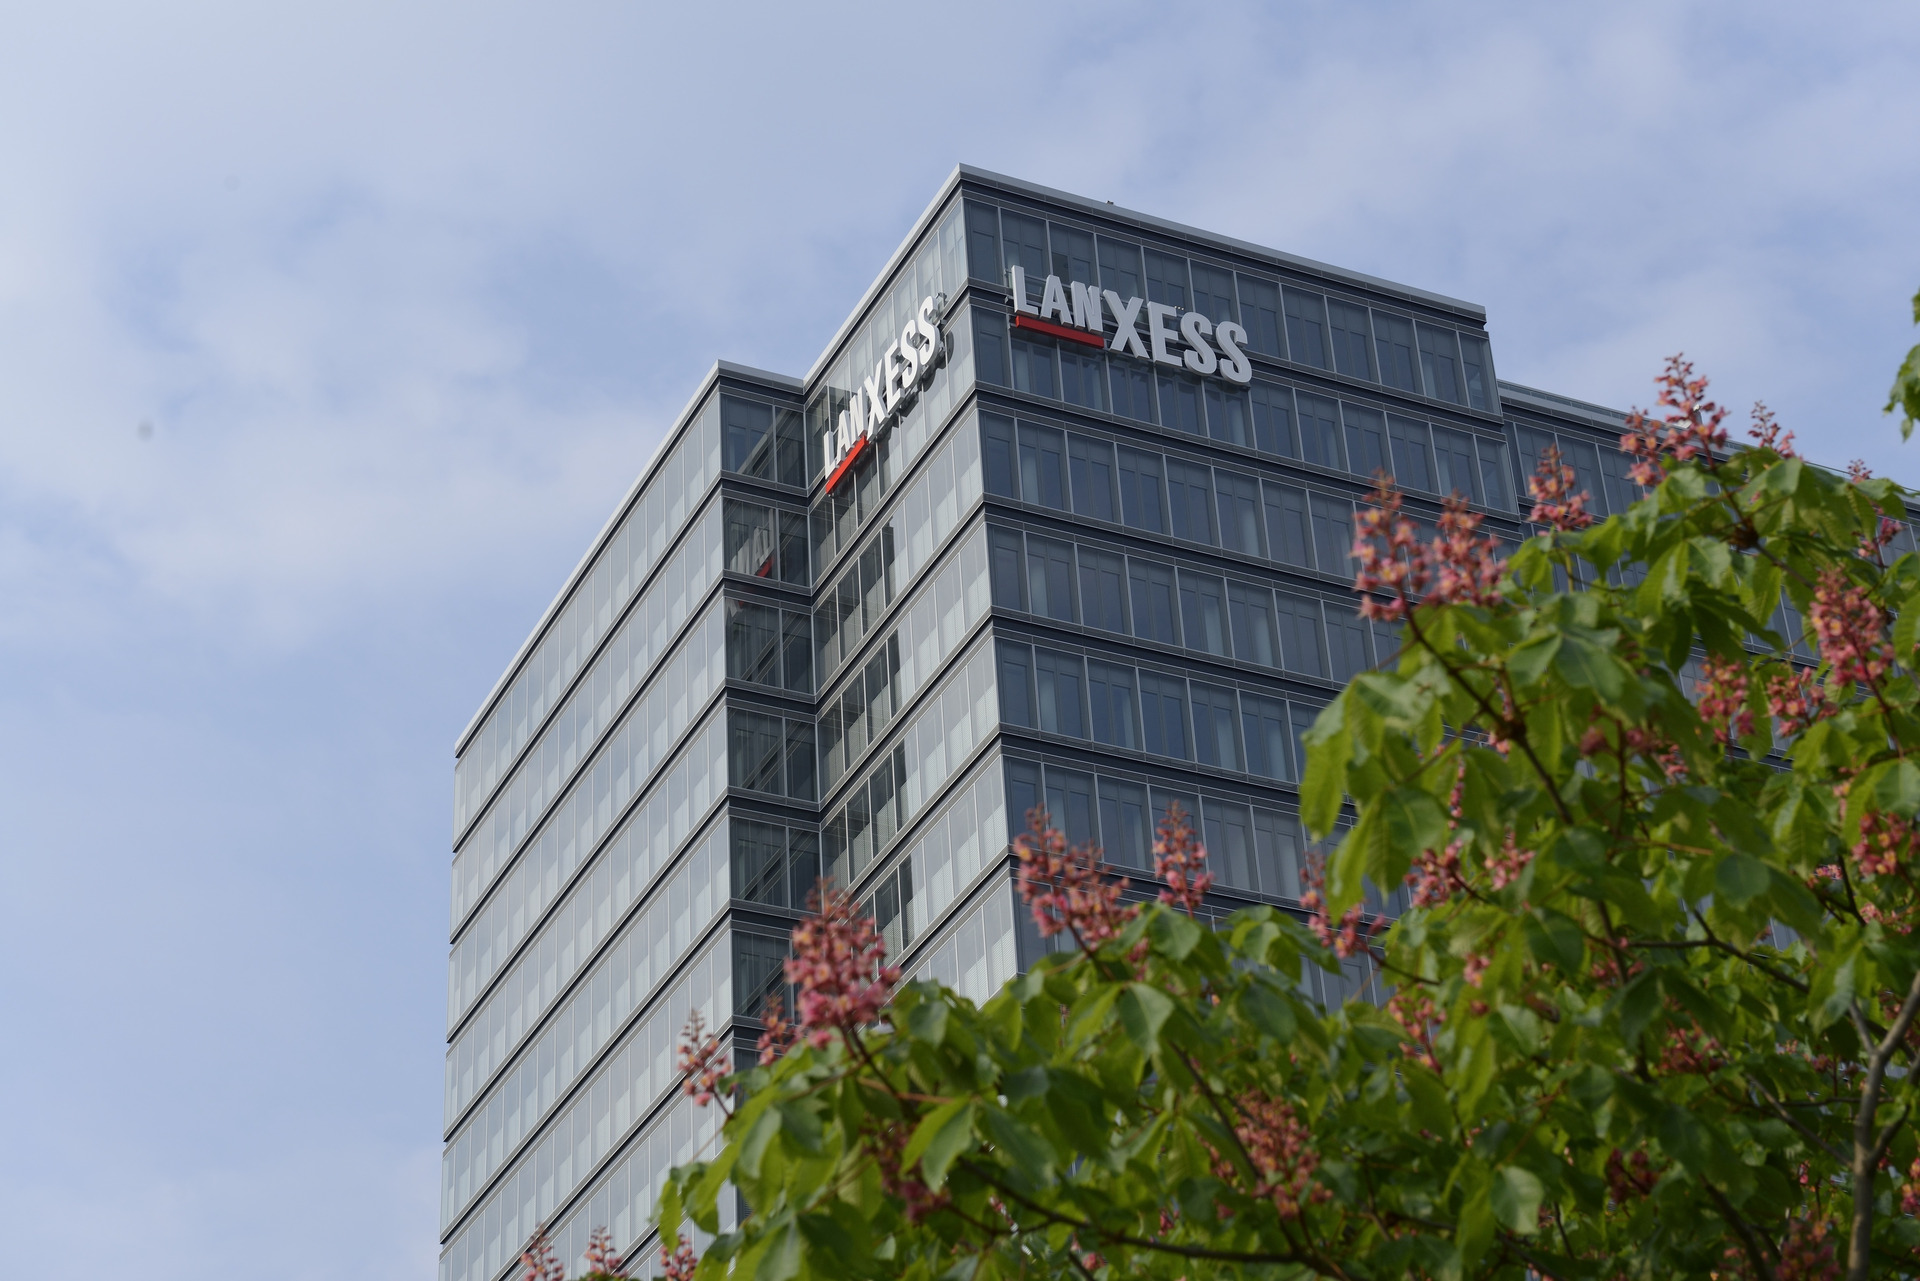 Seit dem 1. August 2013 steuert der Spezialchemie-Konzern LANXESS offiziell seine weltweiten Geschäfte vom Kölner LANXESS Tower aus.